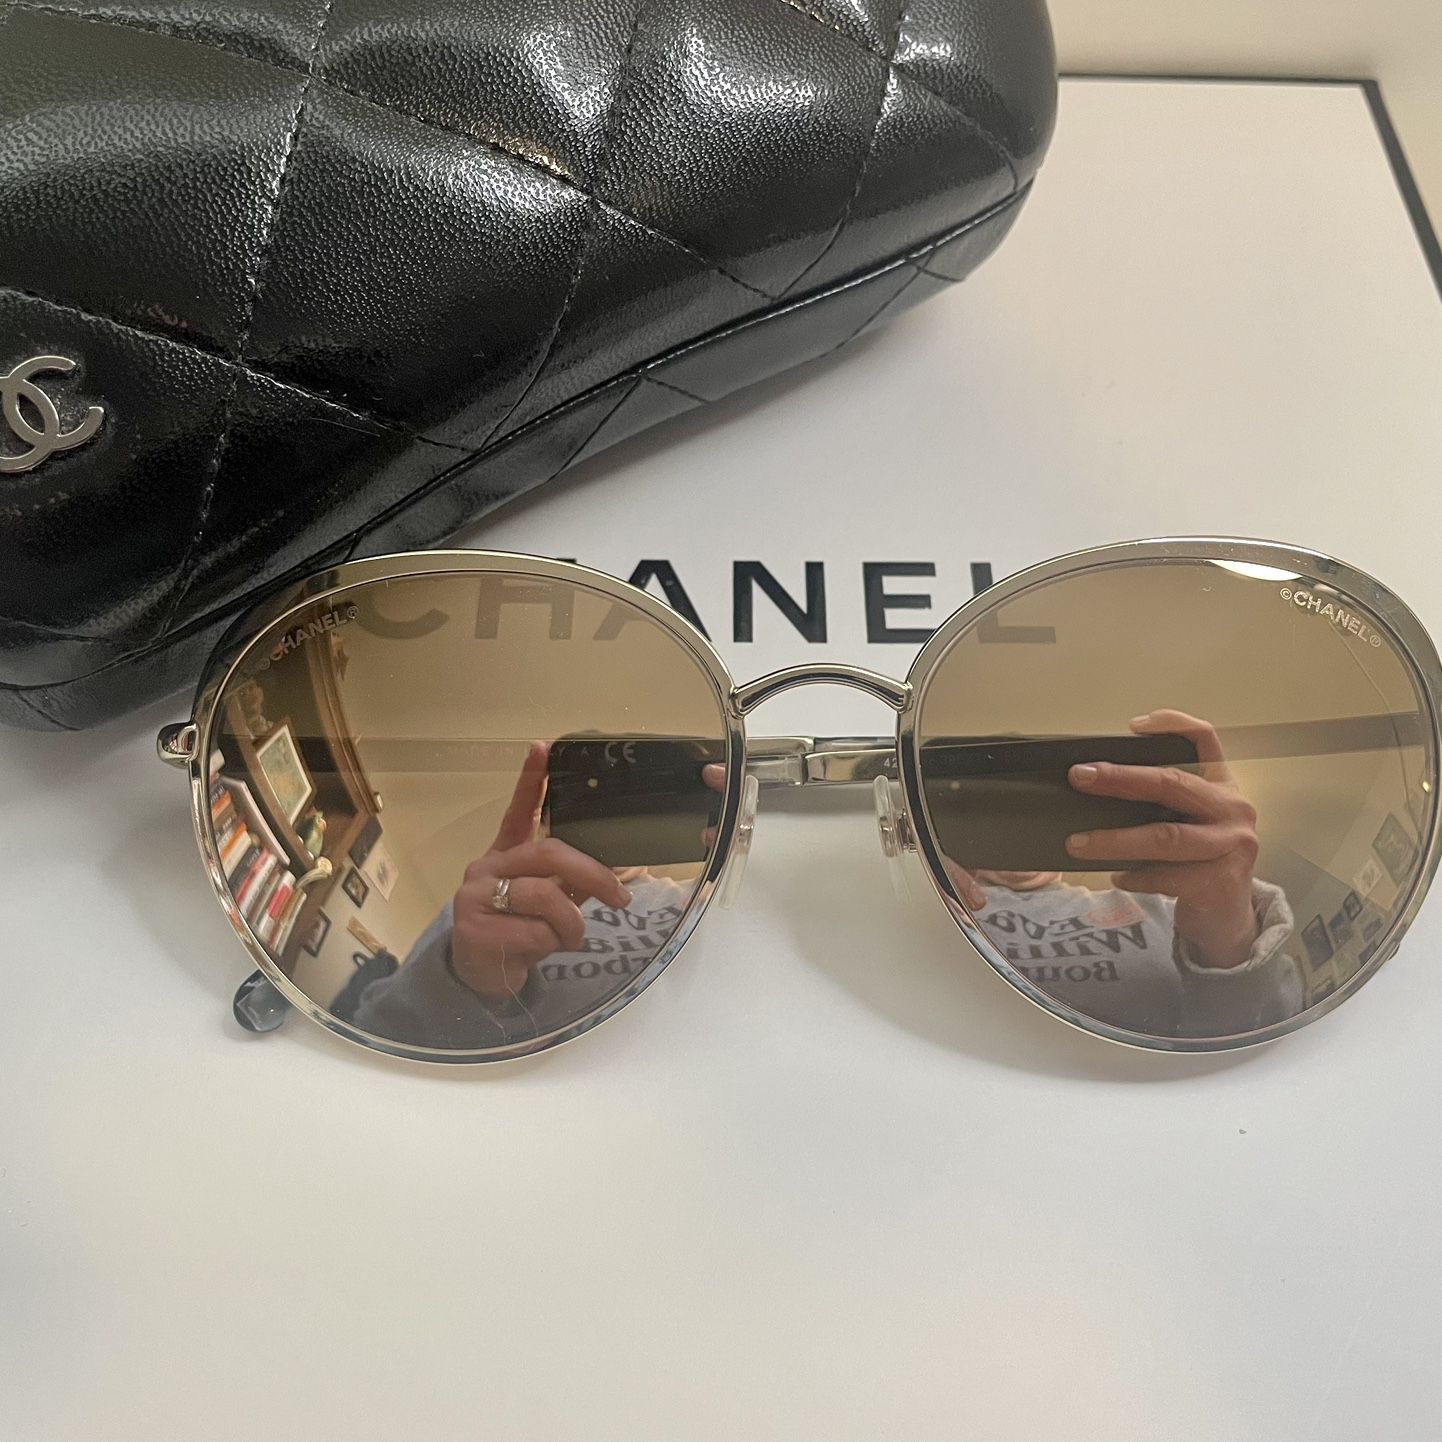 Chanel Sunglasses for Sale in Mountlake Terrace, WA - OfferUp